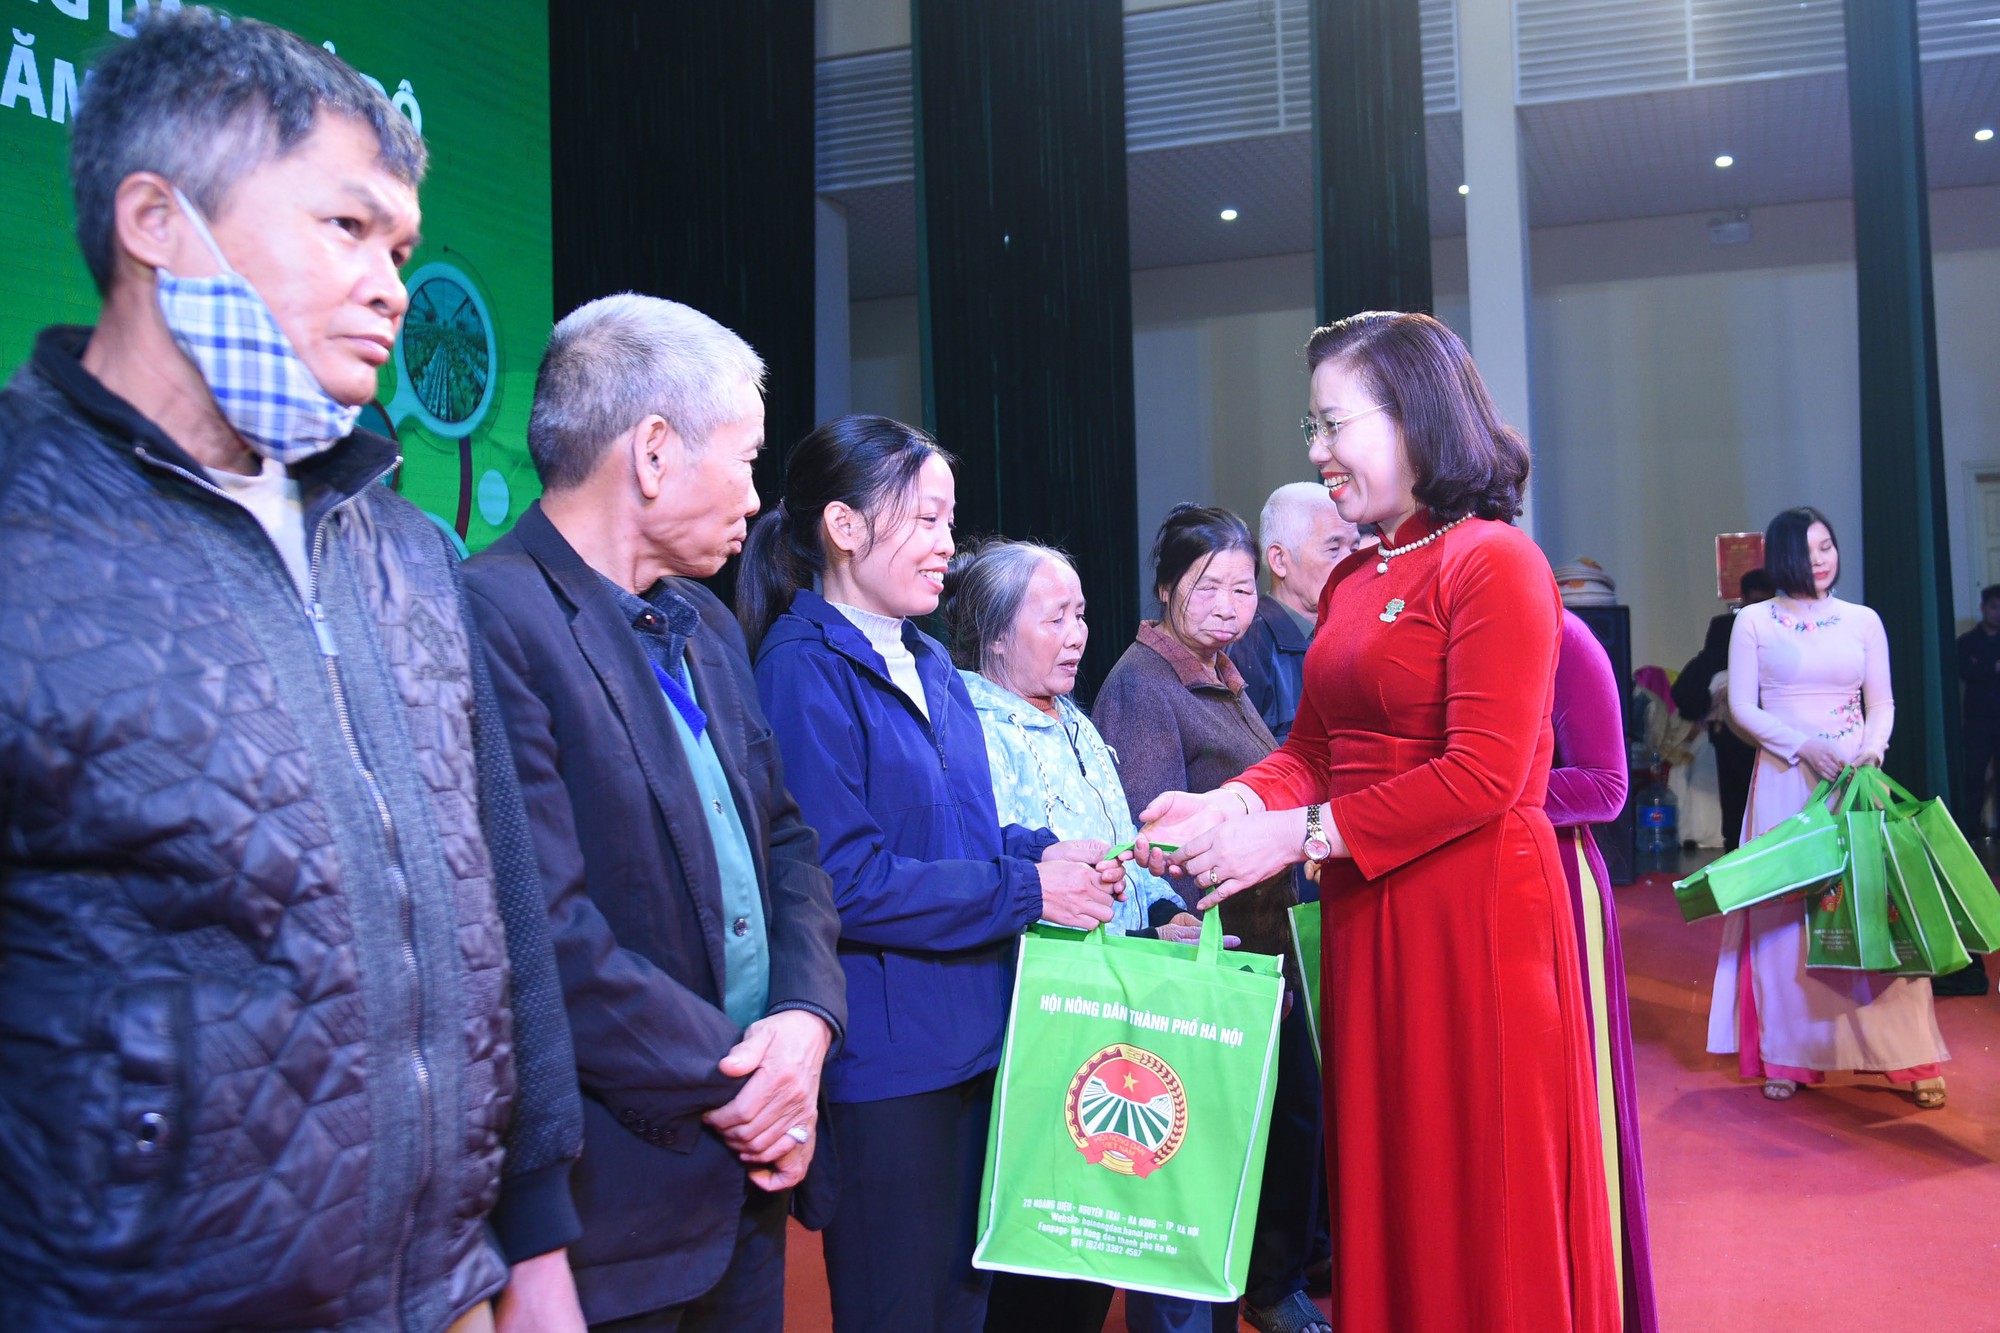 Hội Nông dân Hà Nội tổ chức Lễ mít tinh chào mừng thành công Đại hội đại biểu toàn quốc Hội NDVN lần thứ VIII - Ảnh 7.